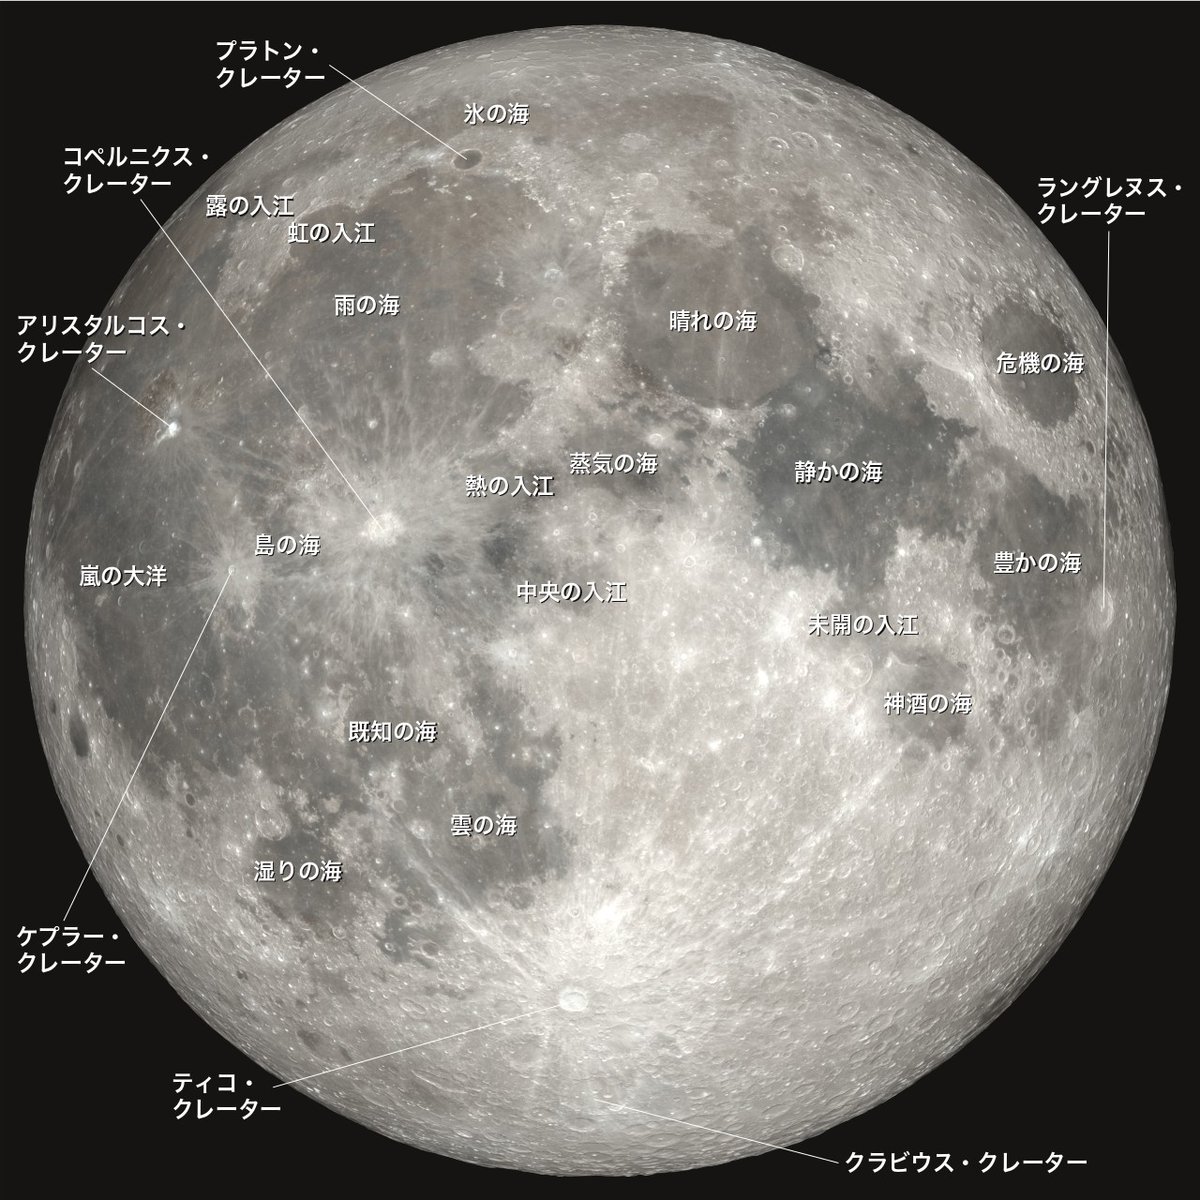 今夜（明日未明）は満月ですね。

画像は月の「海」や主なクレーターの名前です（Image Credit: NASA's Scientific Visualization Studio）。

今さらですが、満月のお供にどうぞ。

画像に関しては記事をご覧ください👉
astropics.bookbright.co.jp/moon_mare